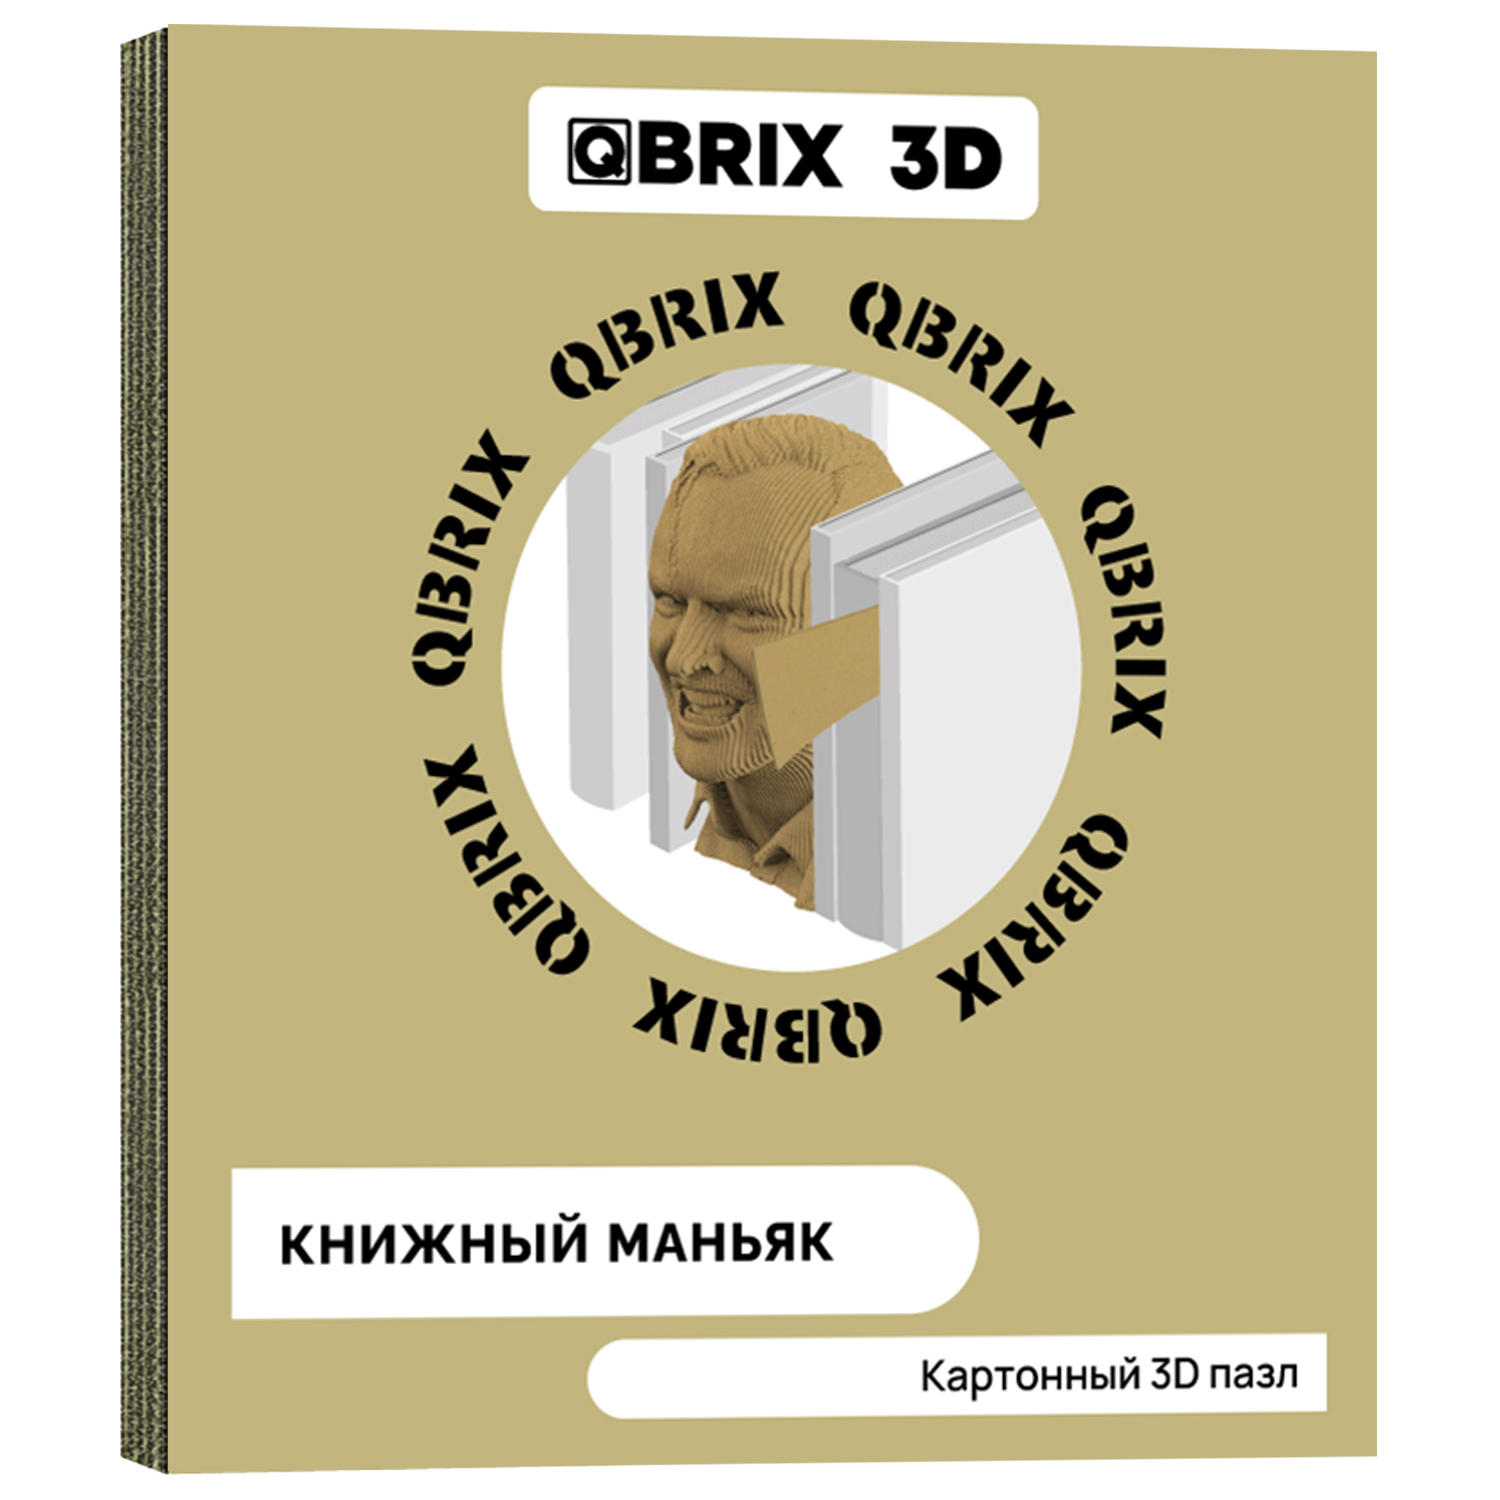 Конструктор QBRIX 3D картонный Книжный Маньяк 20006 20006 - фото 1